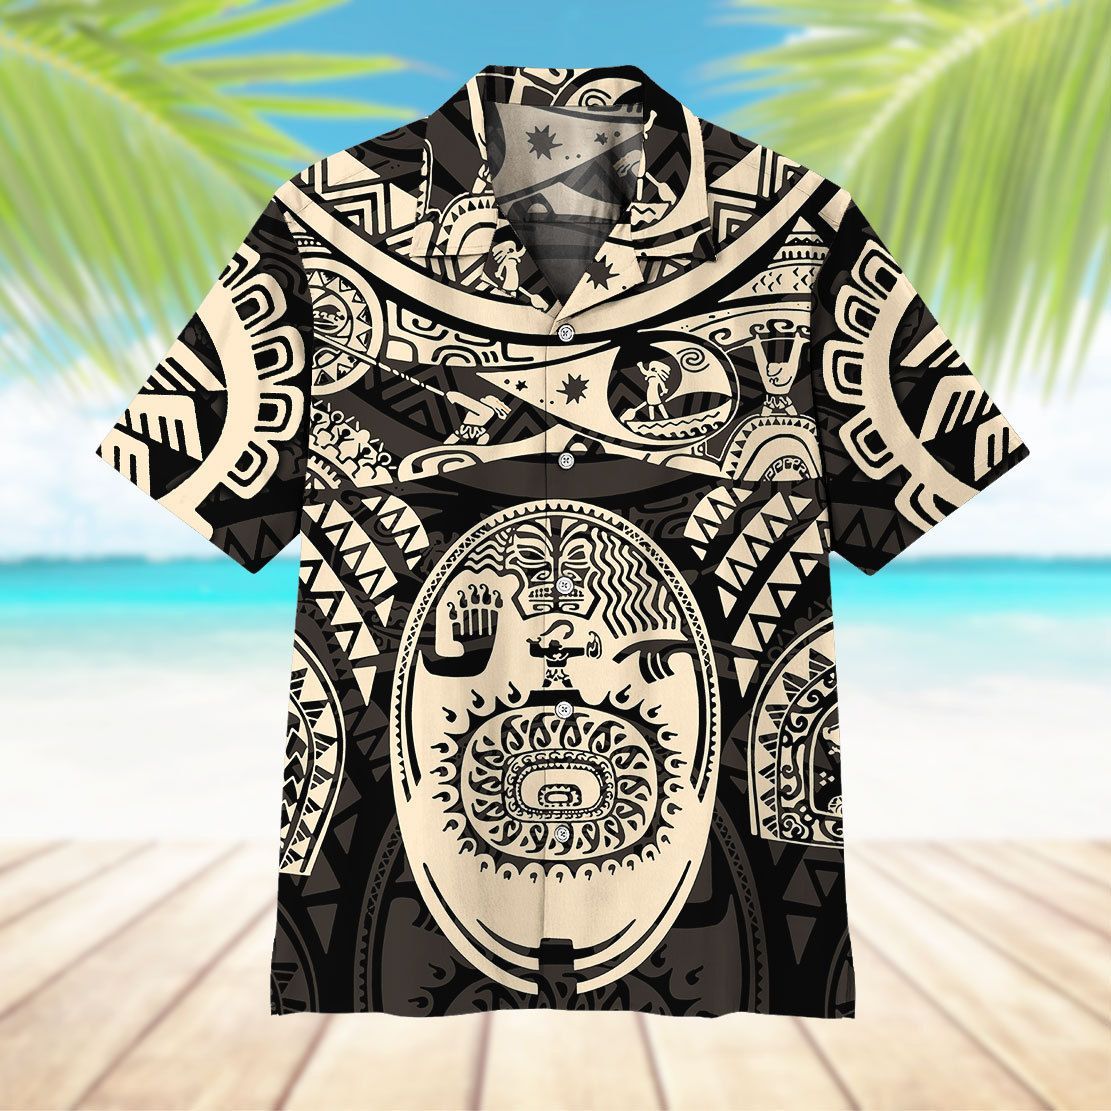 Gearhuman 3D A Demigod Of Hawaii Tattoo Hawaii Shirt ZK0207213 Short Sleeve Shirt 